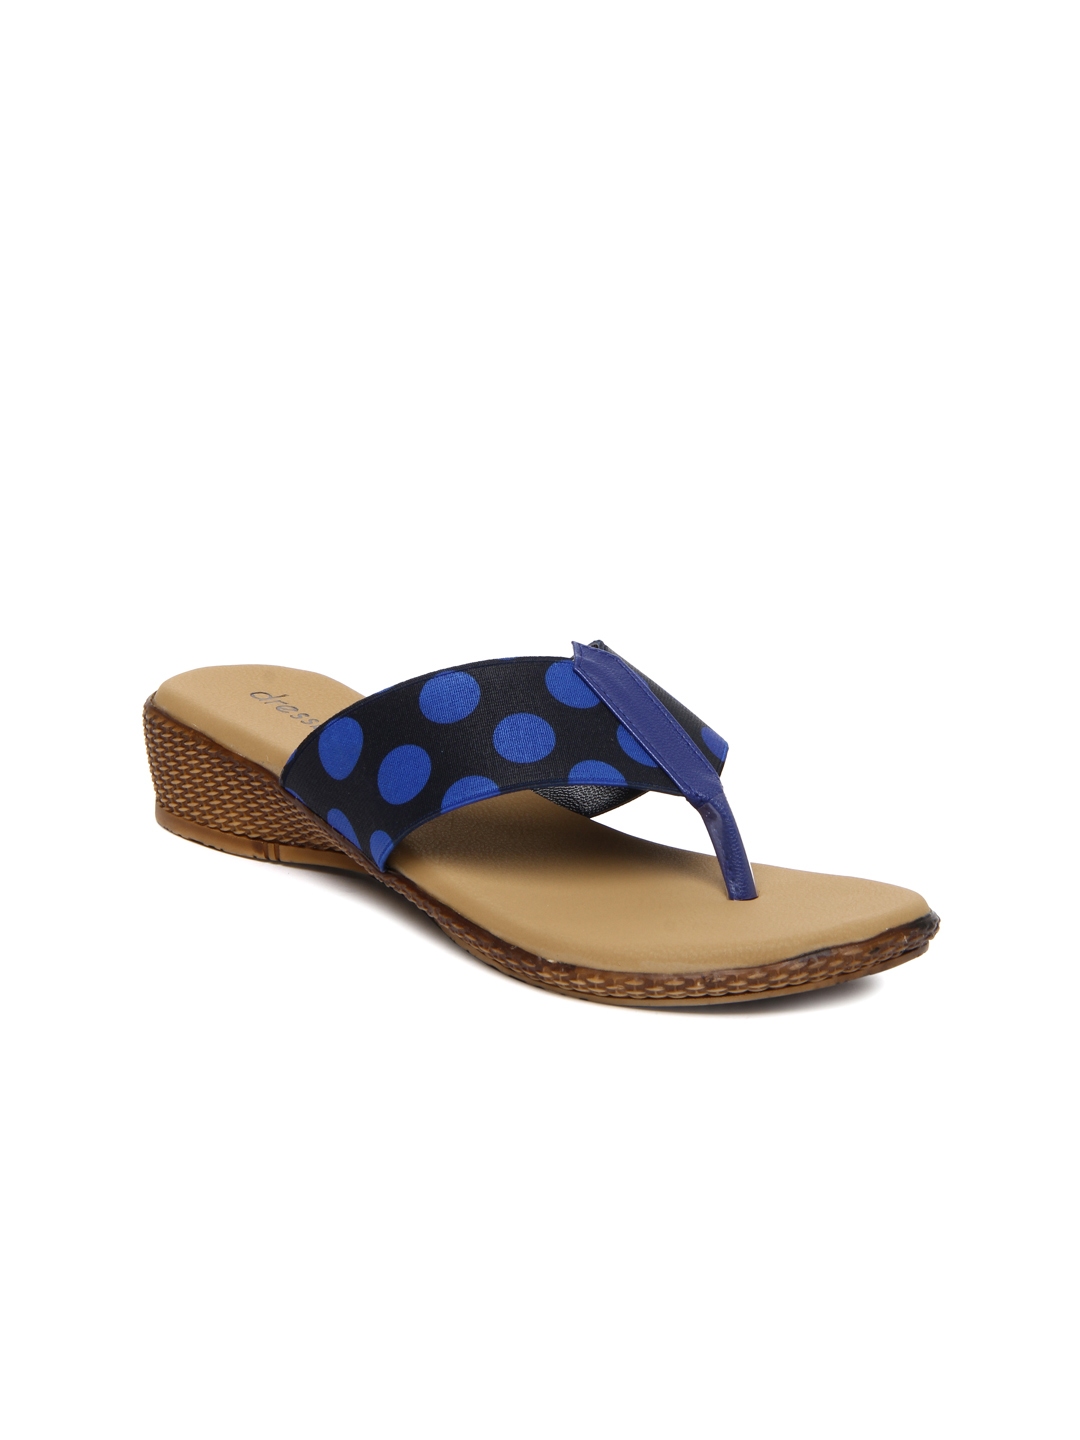 Buy DressBerry Women Blue & Black Sandals - Heels for Women 316338 | Myntra